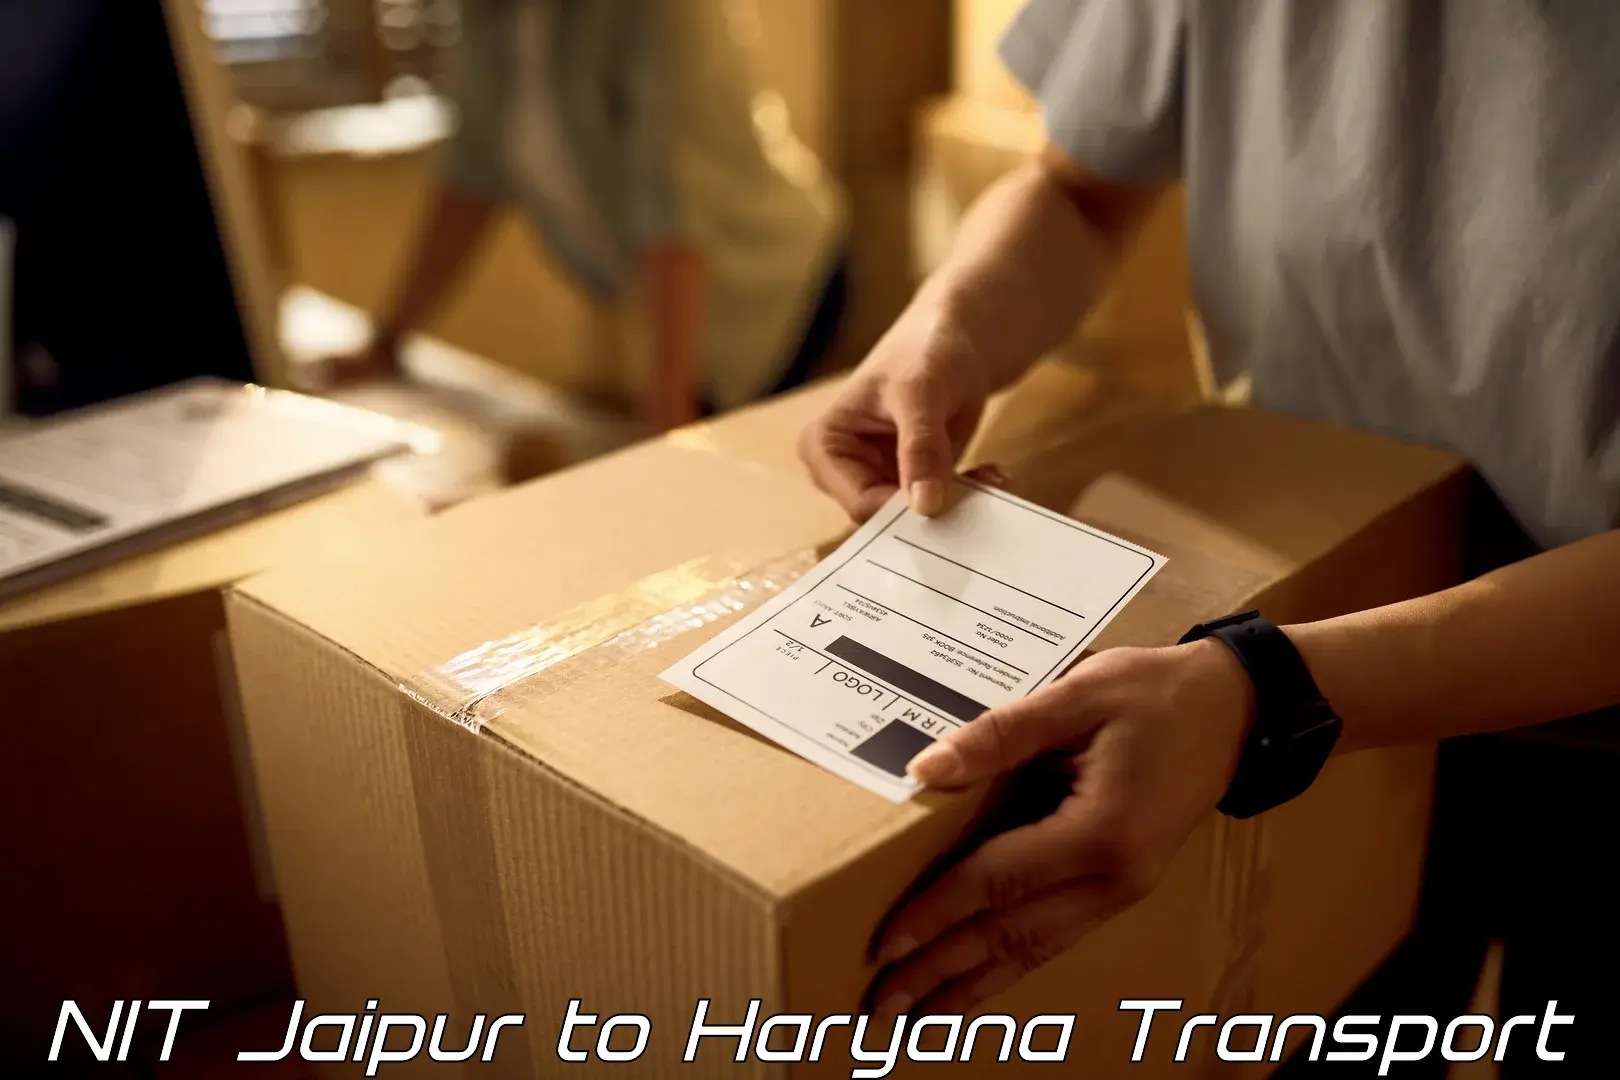 Express transport services NIT Jaipur to Panipat